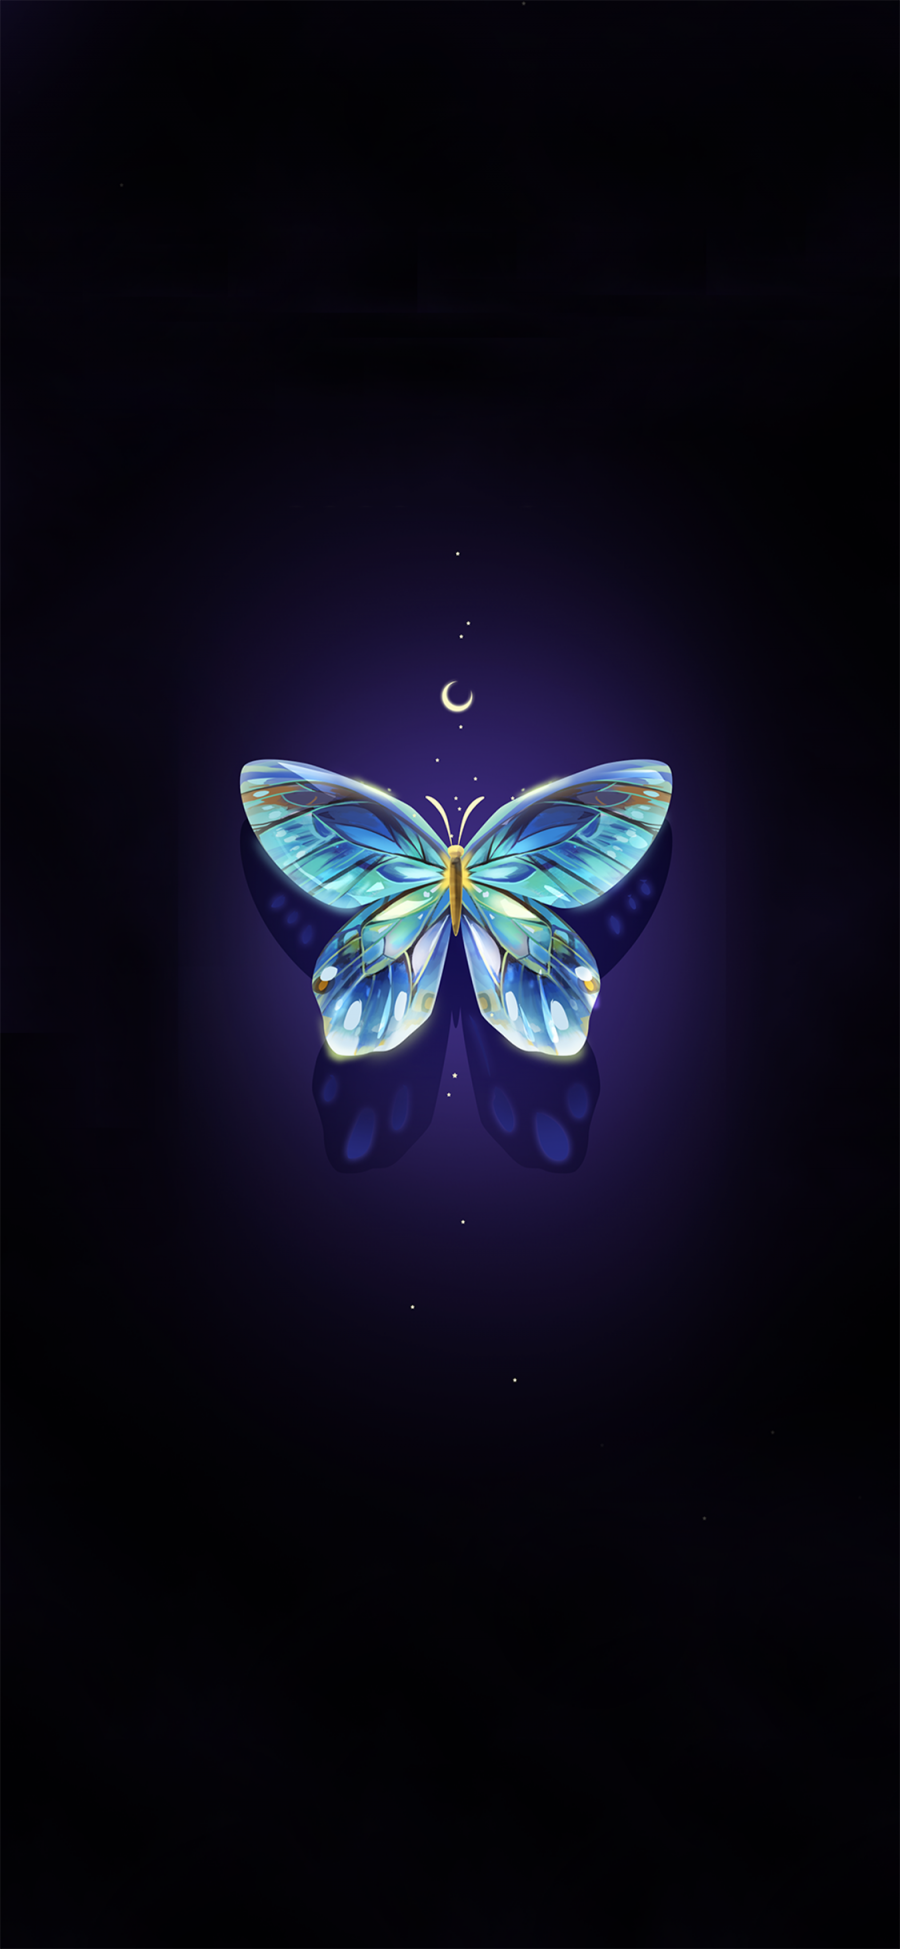 [2436×1125]插图 蝴蝶 蓝色 唯美 苹果手机动漫壁纸图片